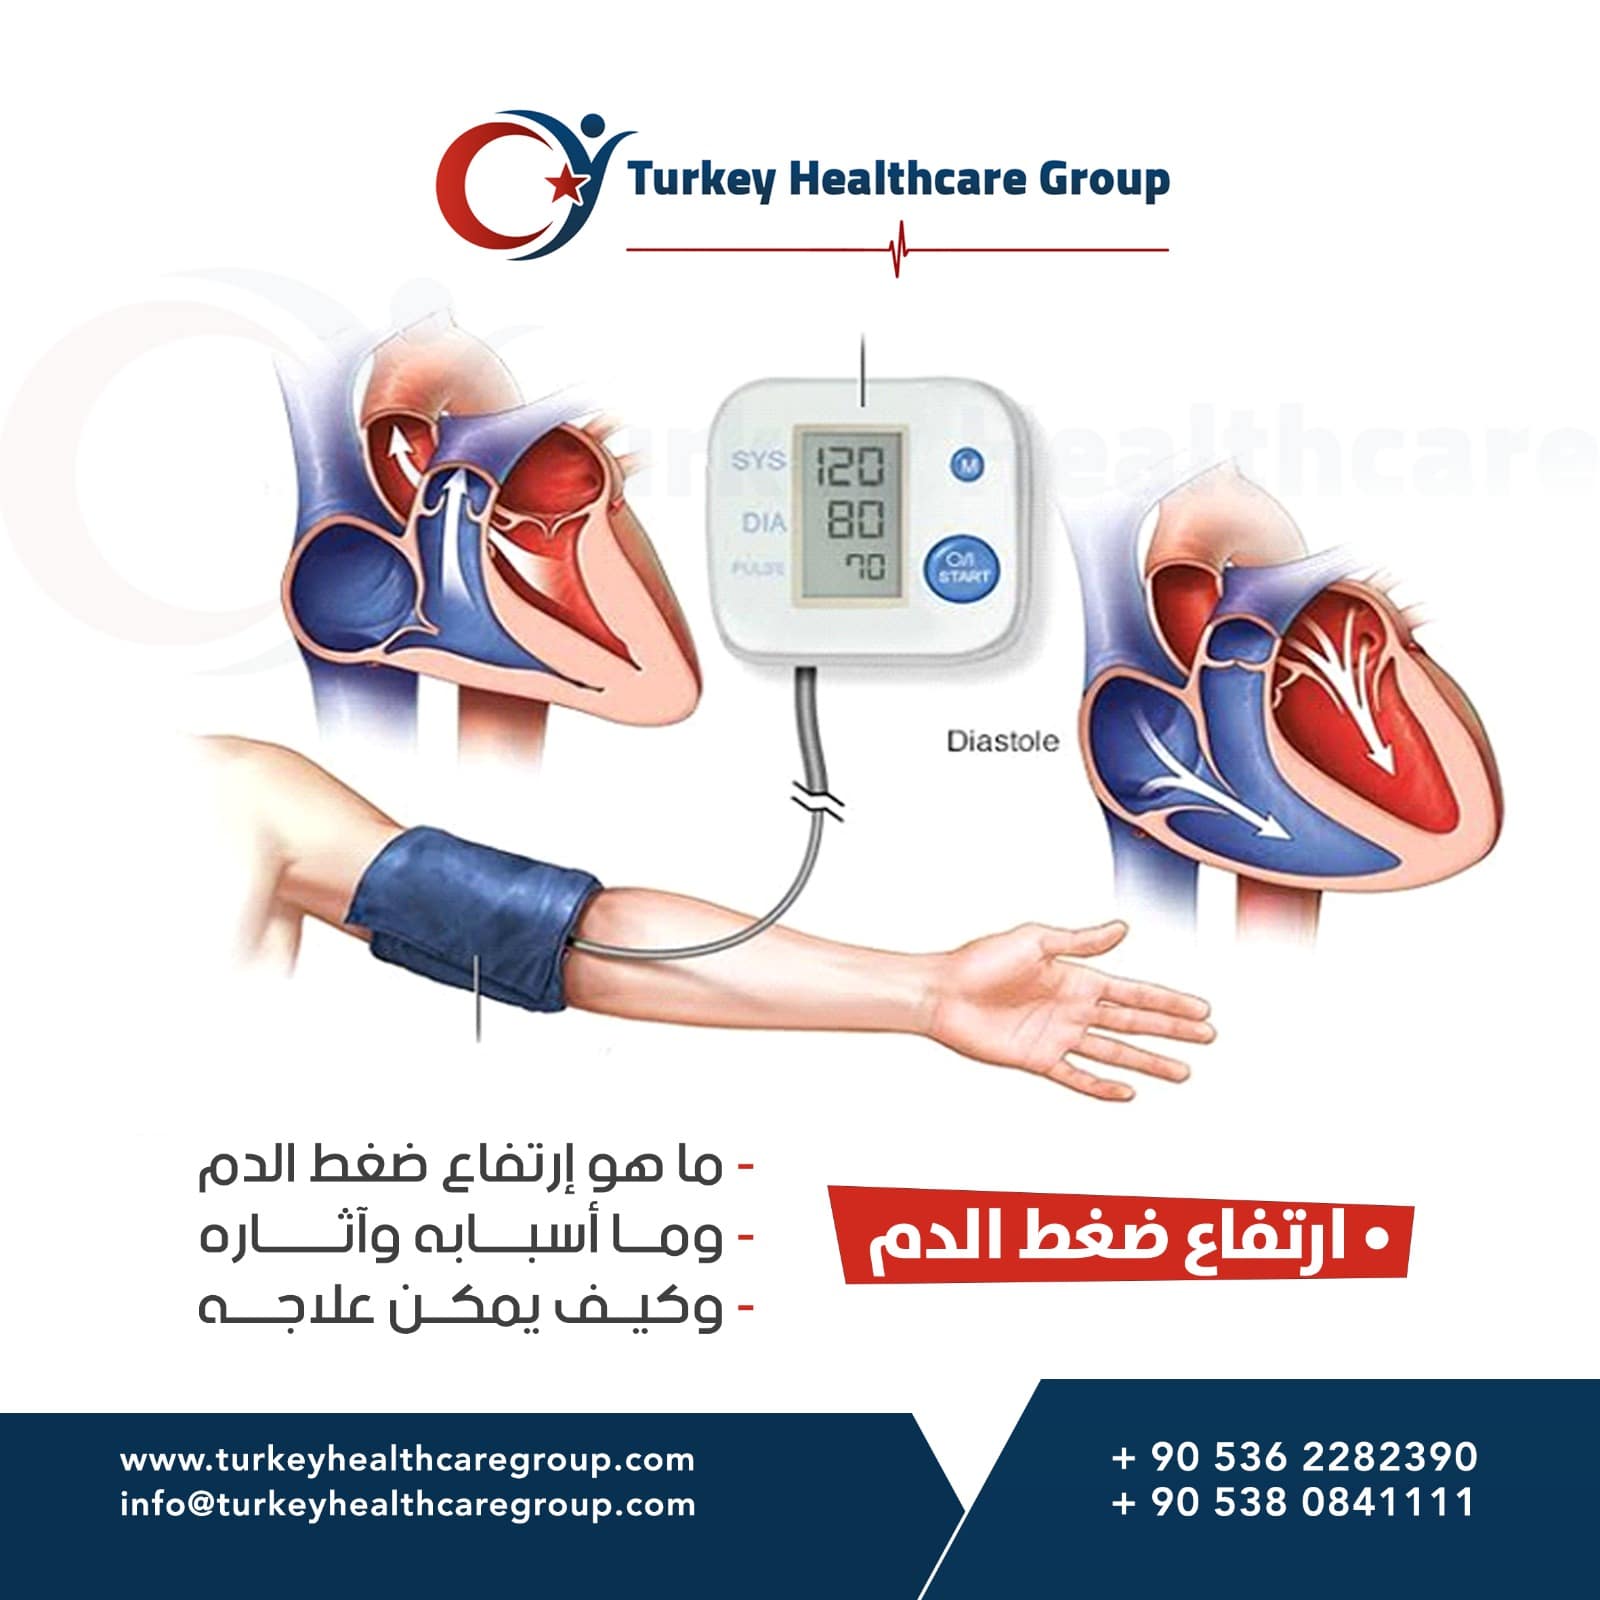 ارتفاع ضغط الدم - اعراض ارتفاع ضغط الدم - اسباب ارتفاع ضغط الدم - علاج ارتفاع  ضغط الدم